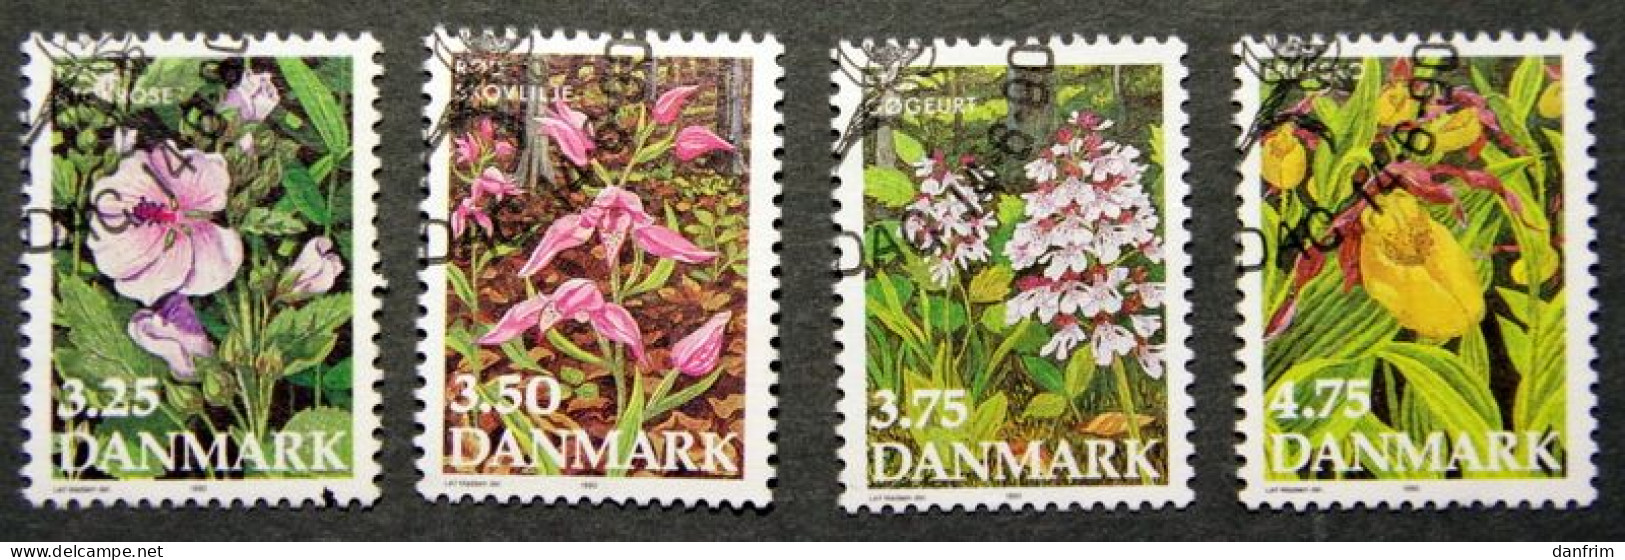 Denmark  1990 Blumen / Flowers  MiNr. 981-984  ( Lot K 687) - Used Stamps